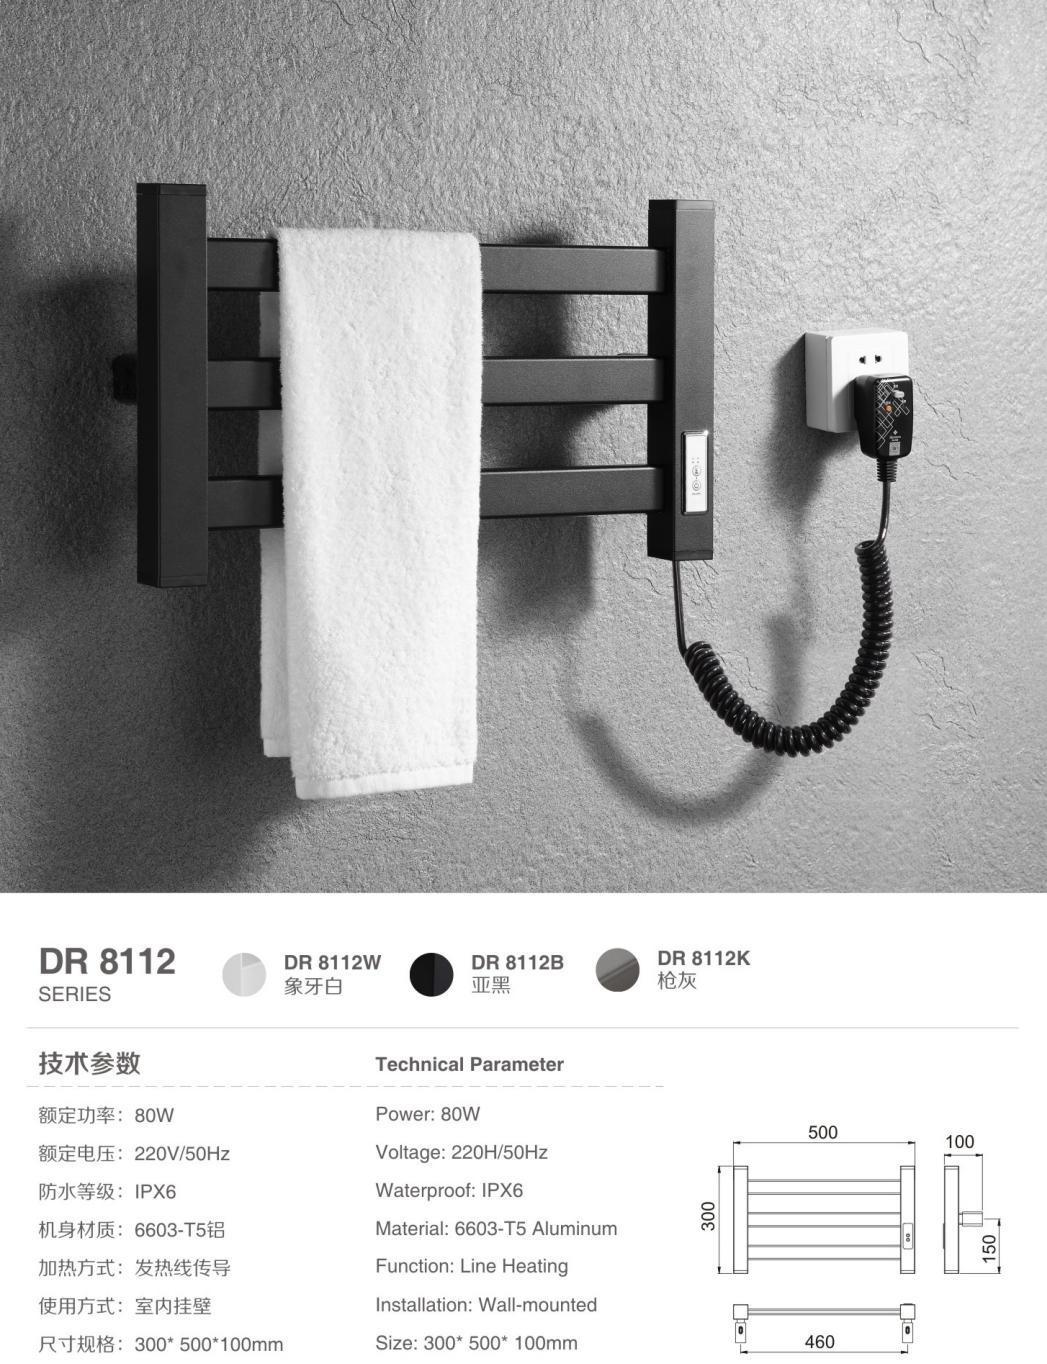 Kaiiy Aluminum Electric Heated Towel Rack Black for Bathroom